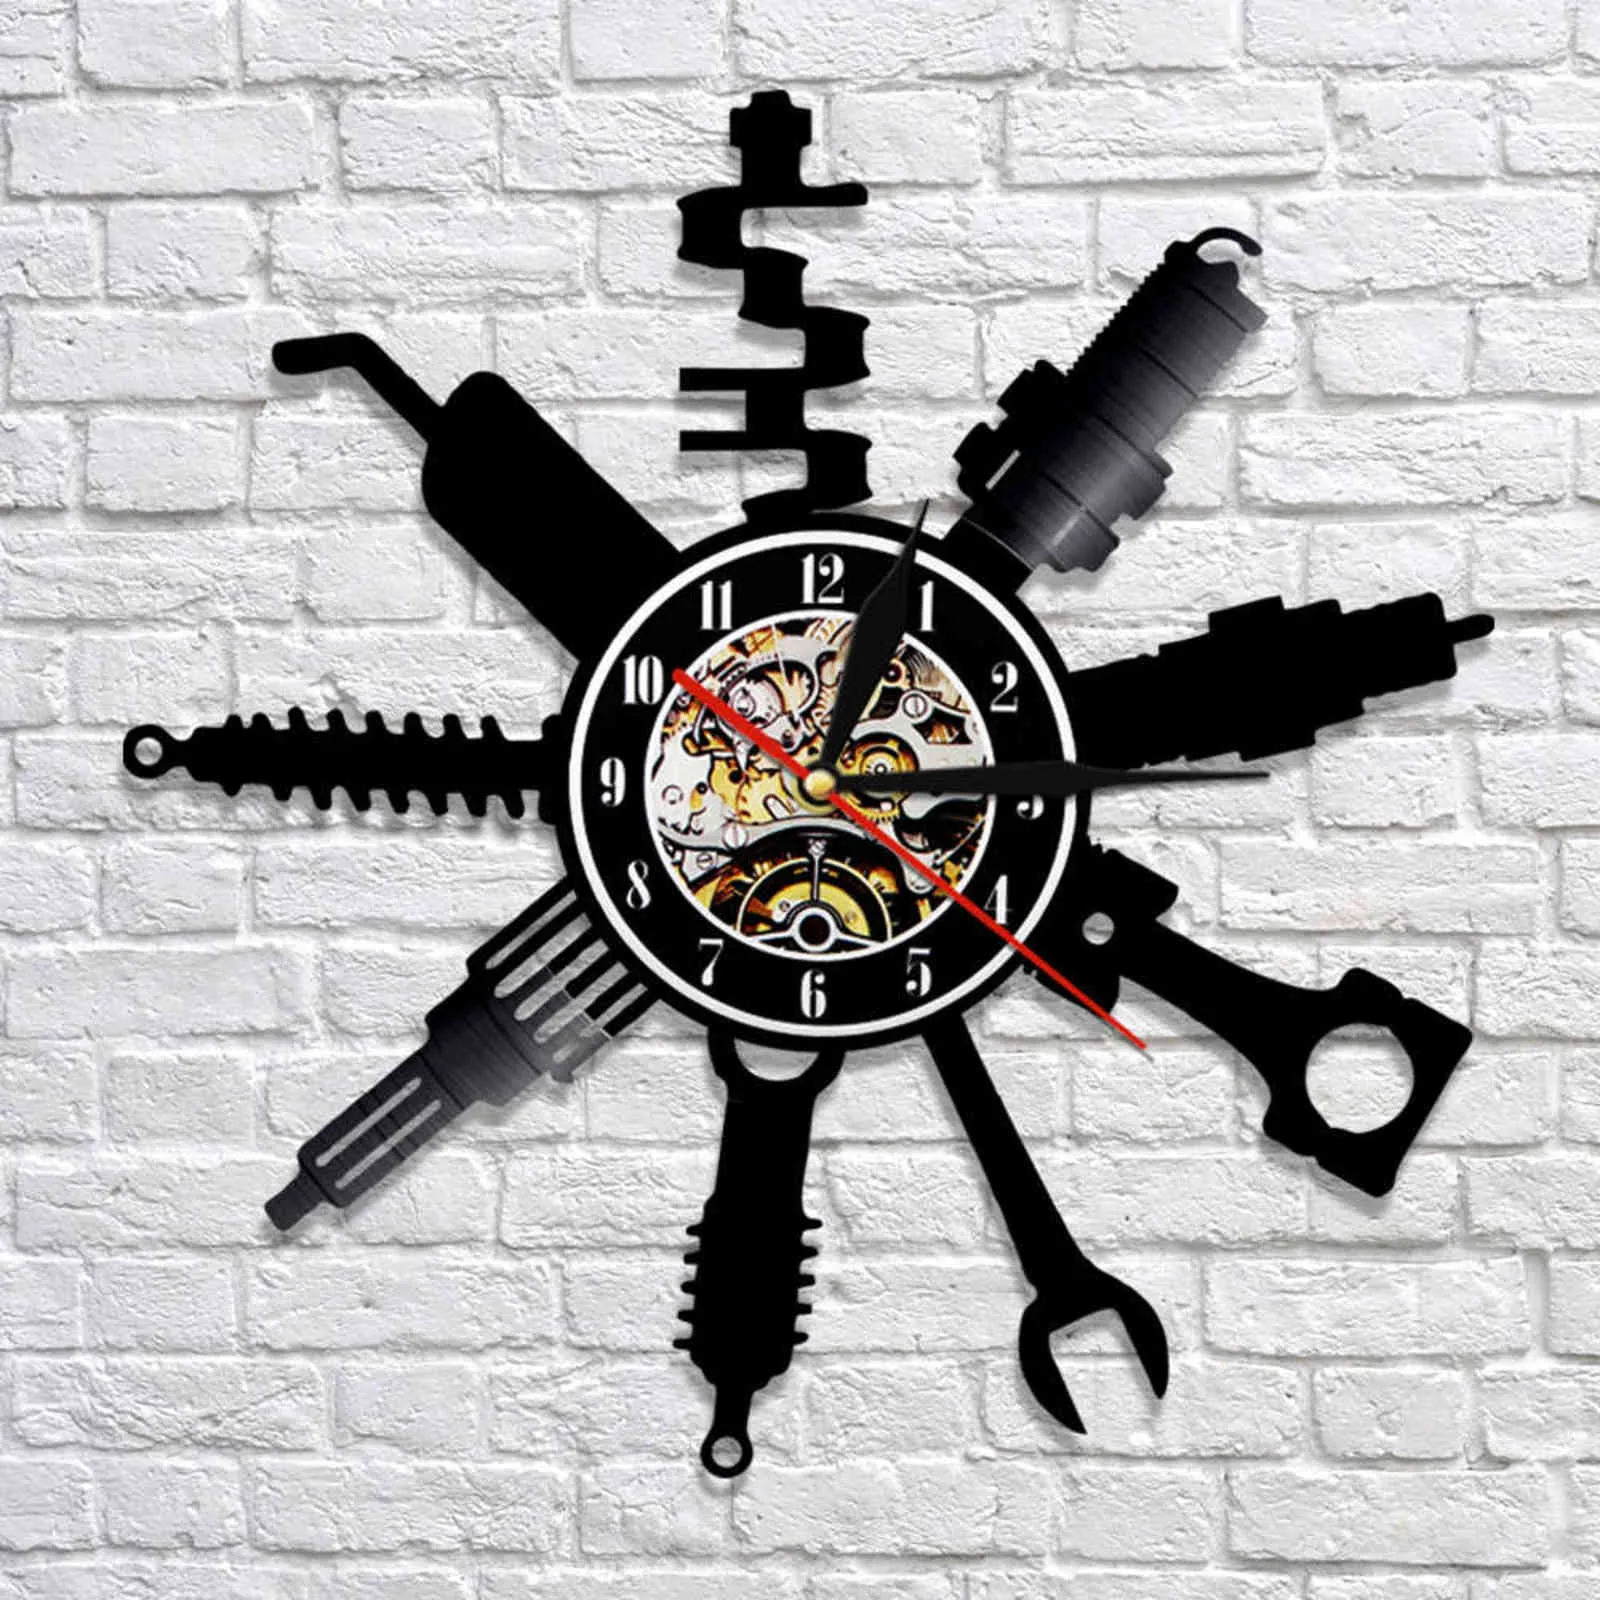 自動車修理店の壁の標識装飾モダン時計車メカニックサービスワークショップレコードガレージ修理マンギフト2111301686371